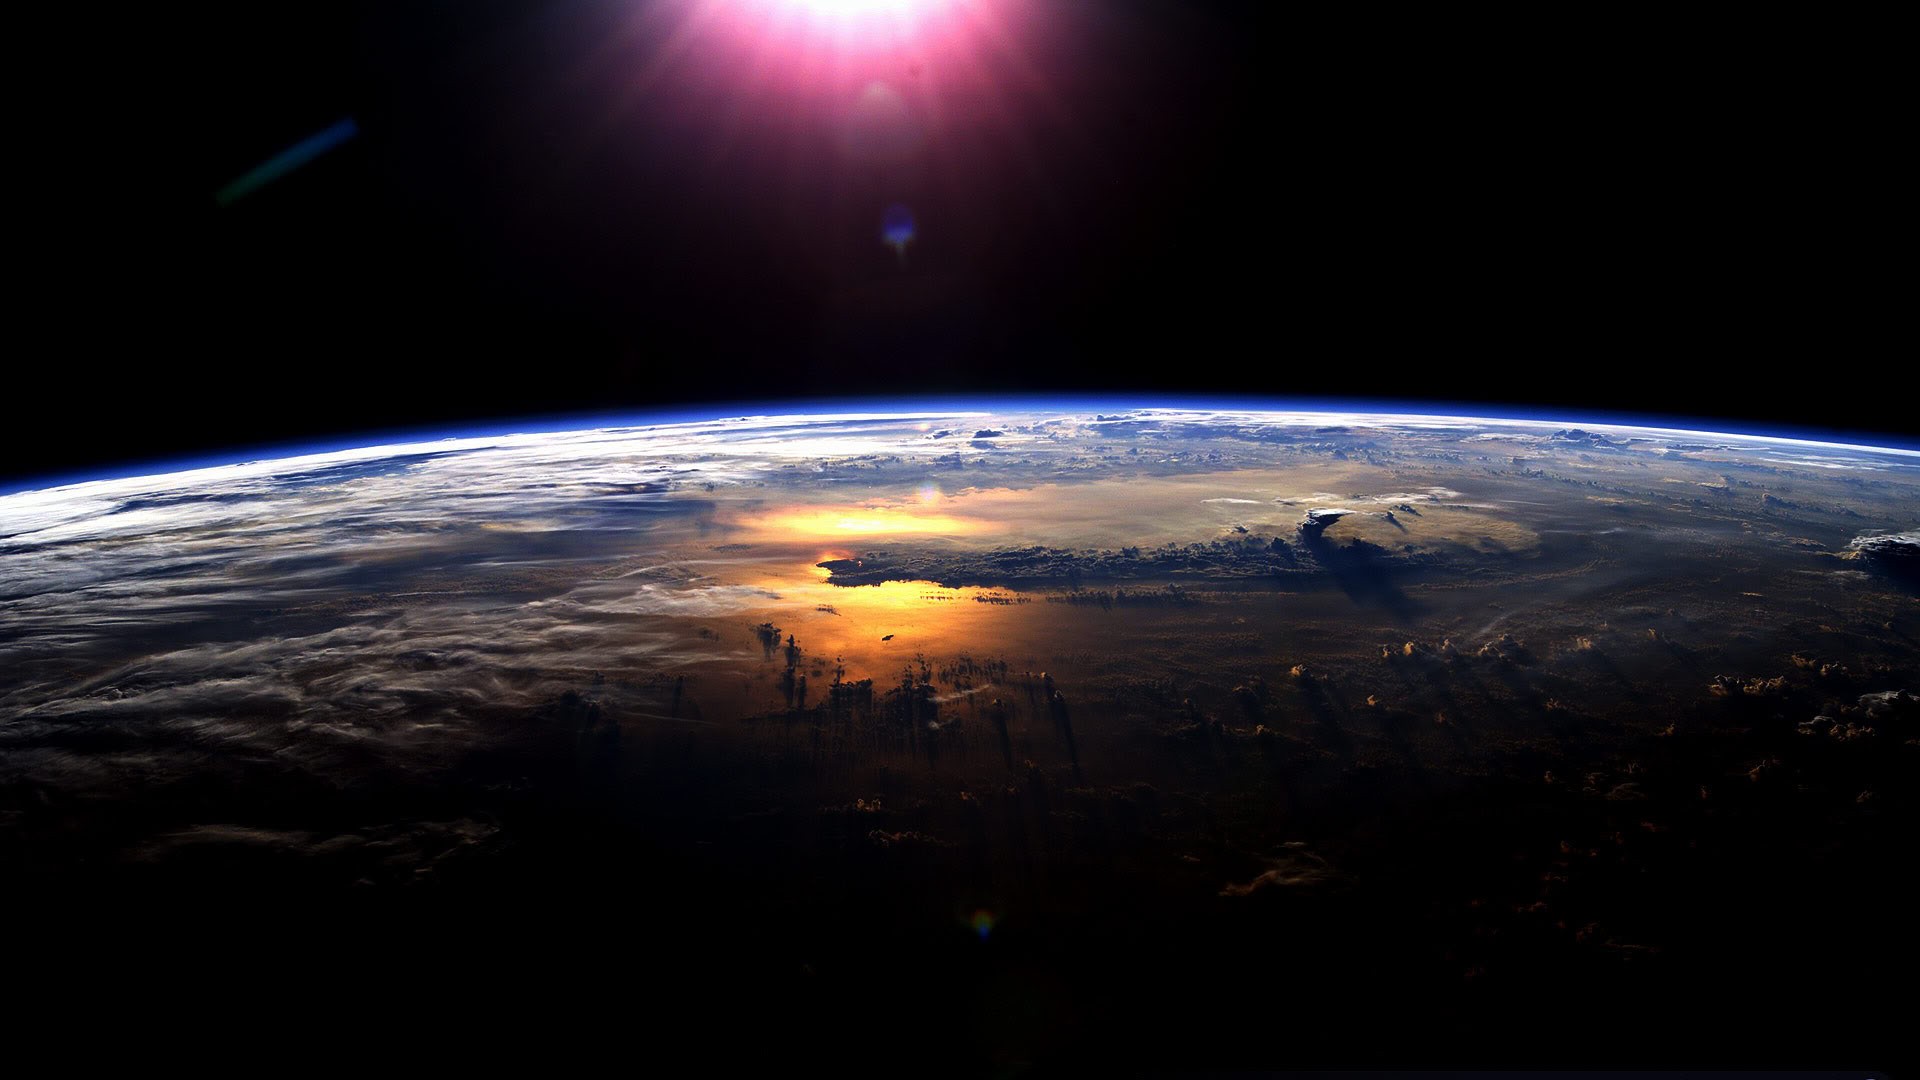 Обои Земля с темной стороны картинки на рабочий стол на тему Космос - скачать скачать